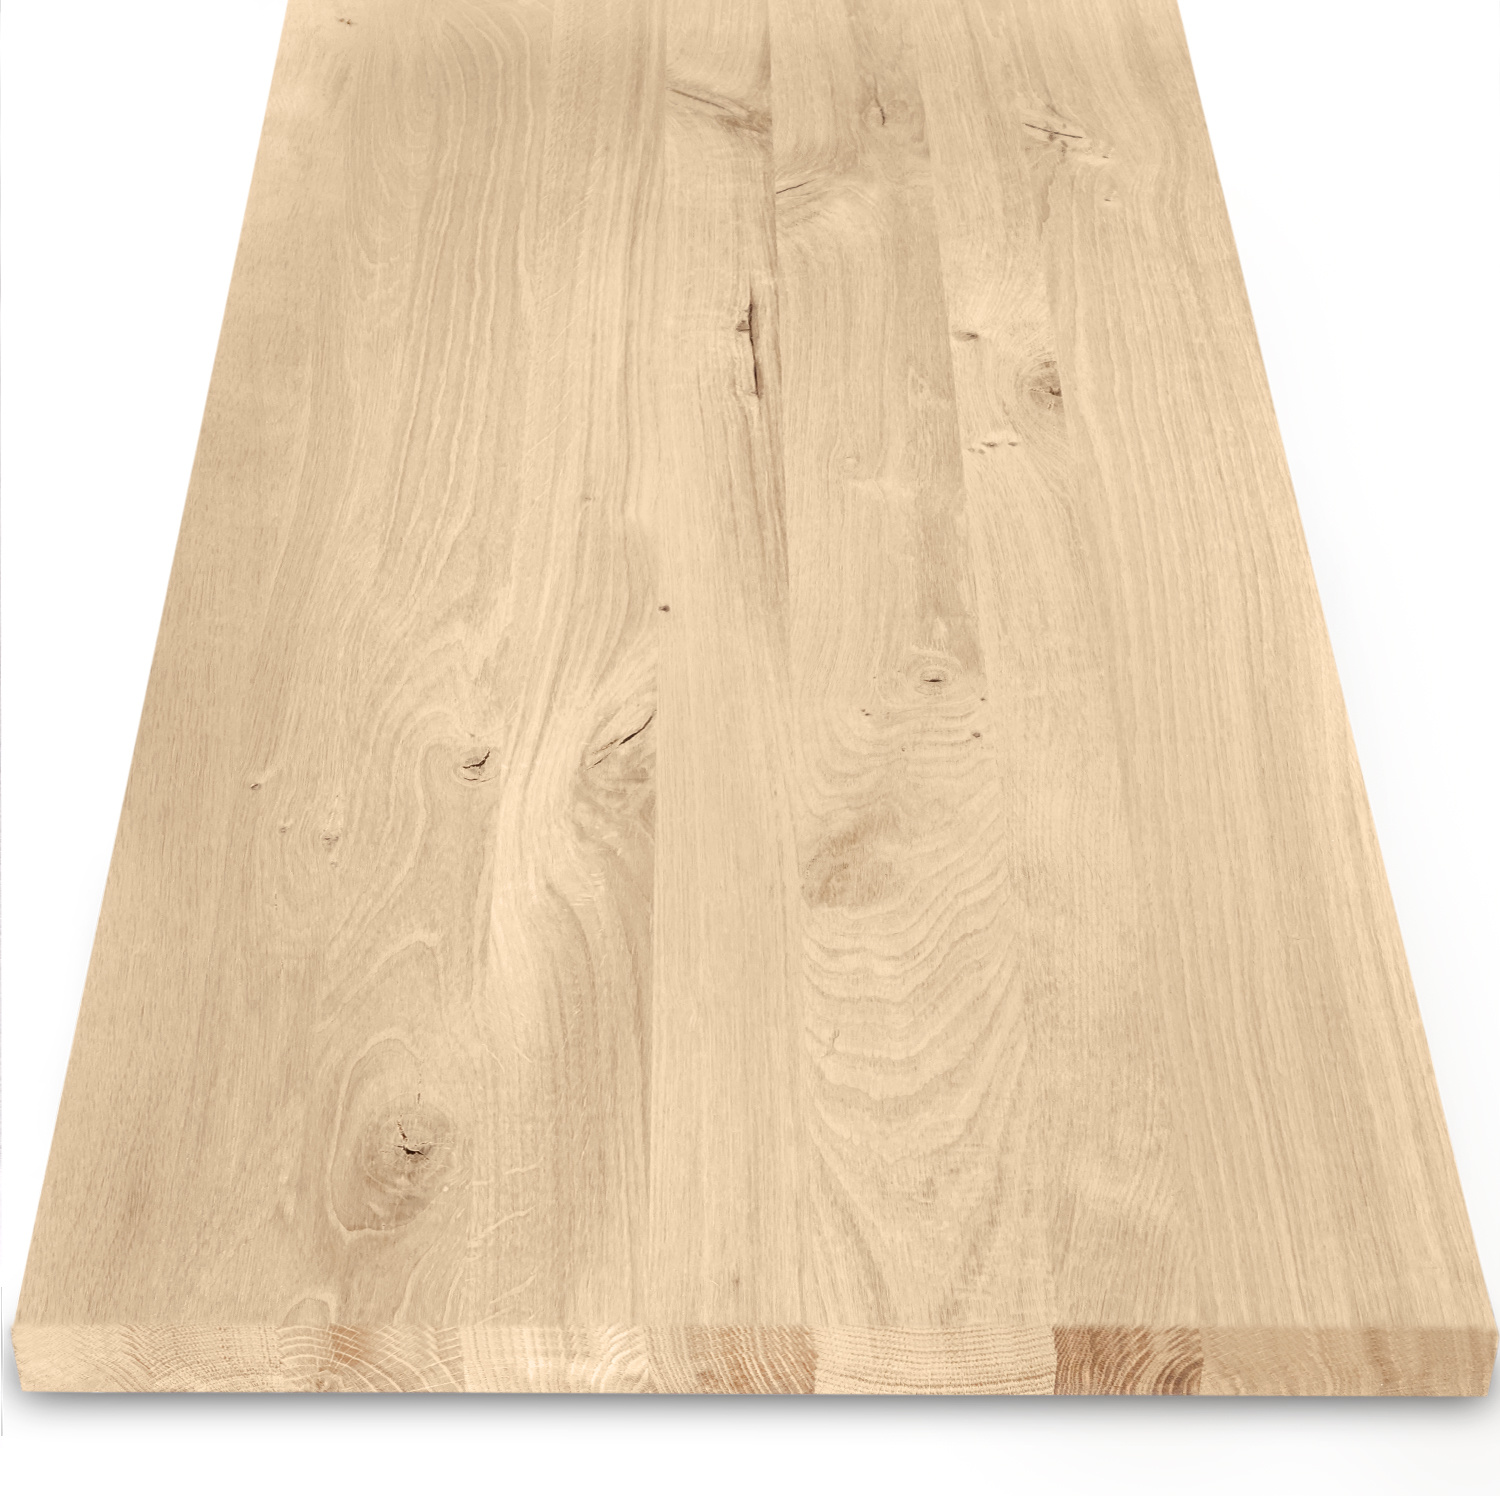  Eiken blad / meubelblad op maat - 4 cm dik (1-laag) - incl. uitsparing - rustiek Europees eikenhout - verlijmd kd 8-12% - 15-120x20-350 cm